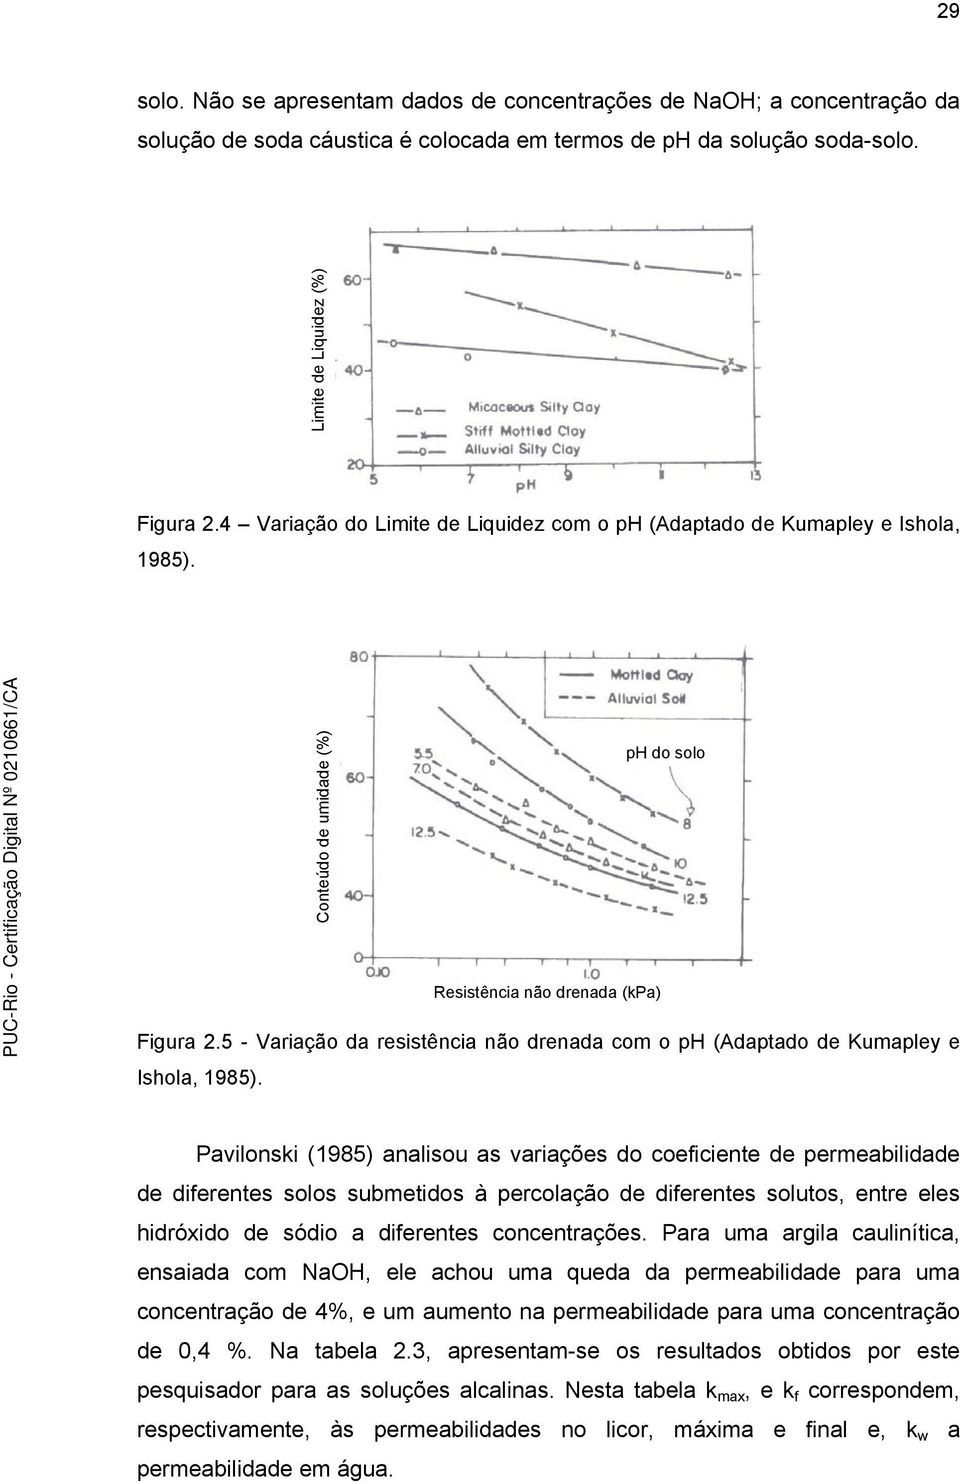 5 - Variação da resistência não drenada com o ph (Adaptado de Kumapley e Ishola, 1985).